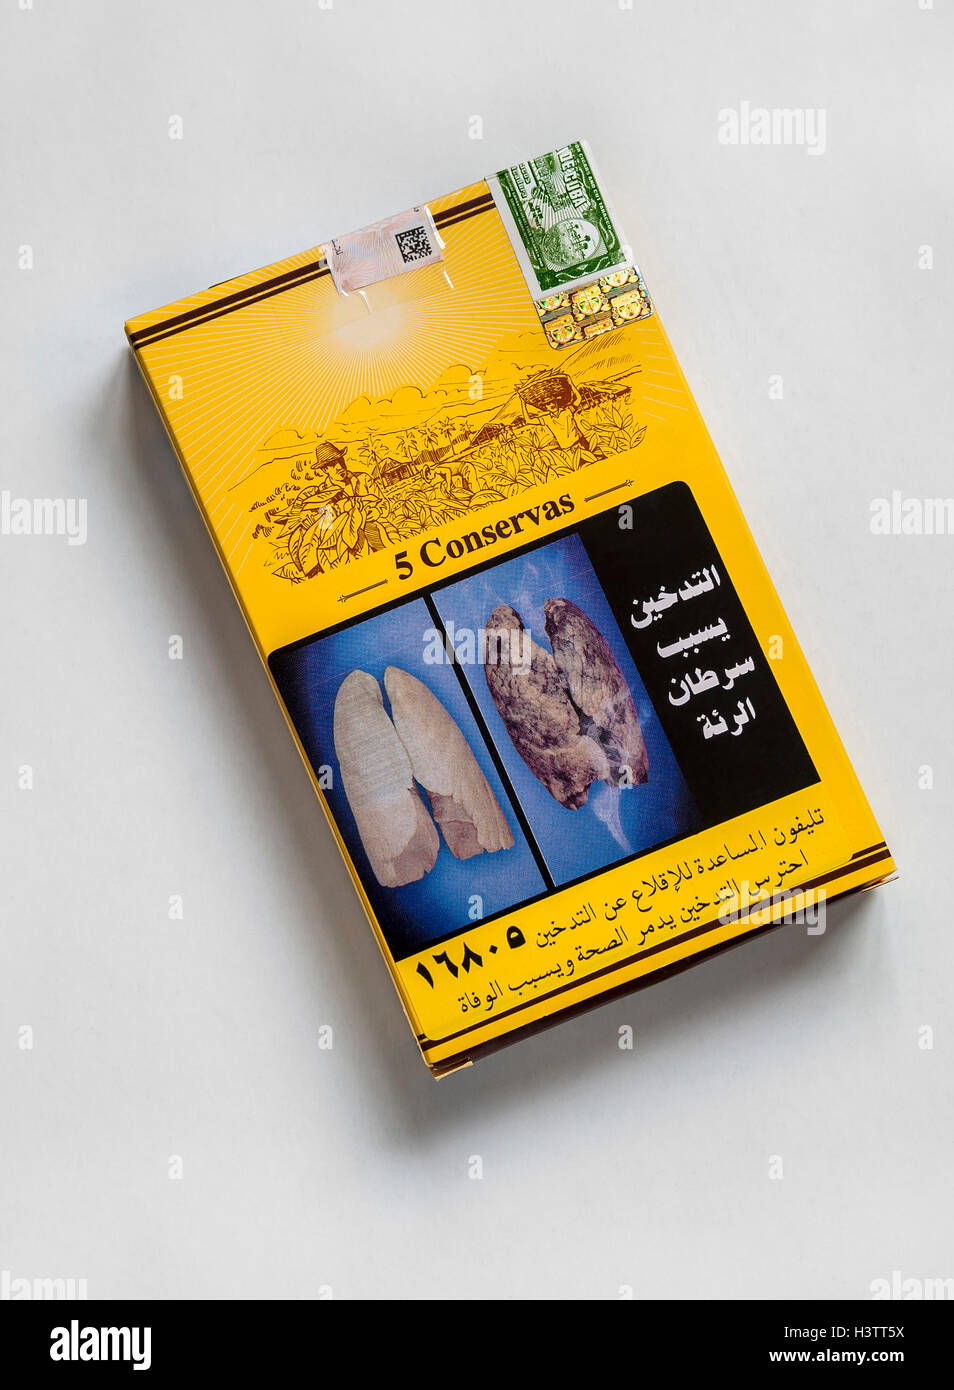 Cigares cubains dans boîte à cigares égyptien avec des images choquantes Banque D'Images